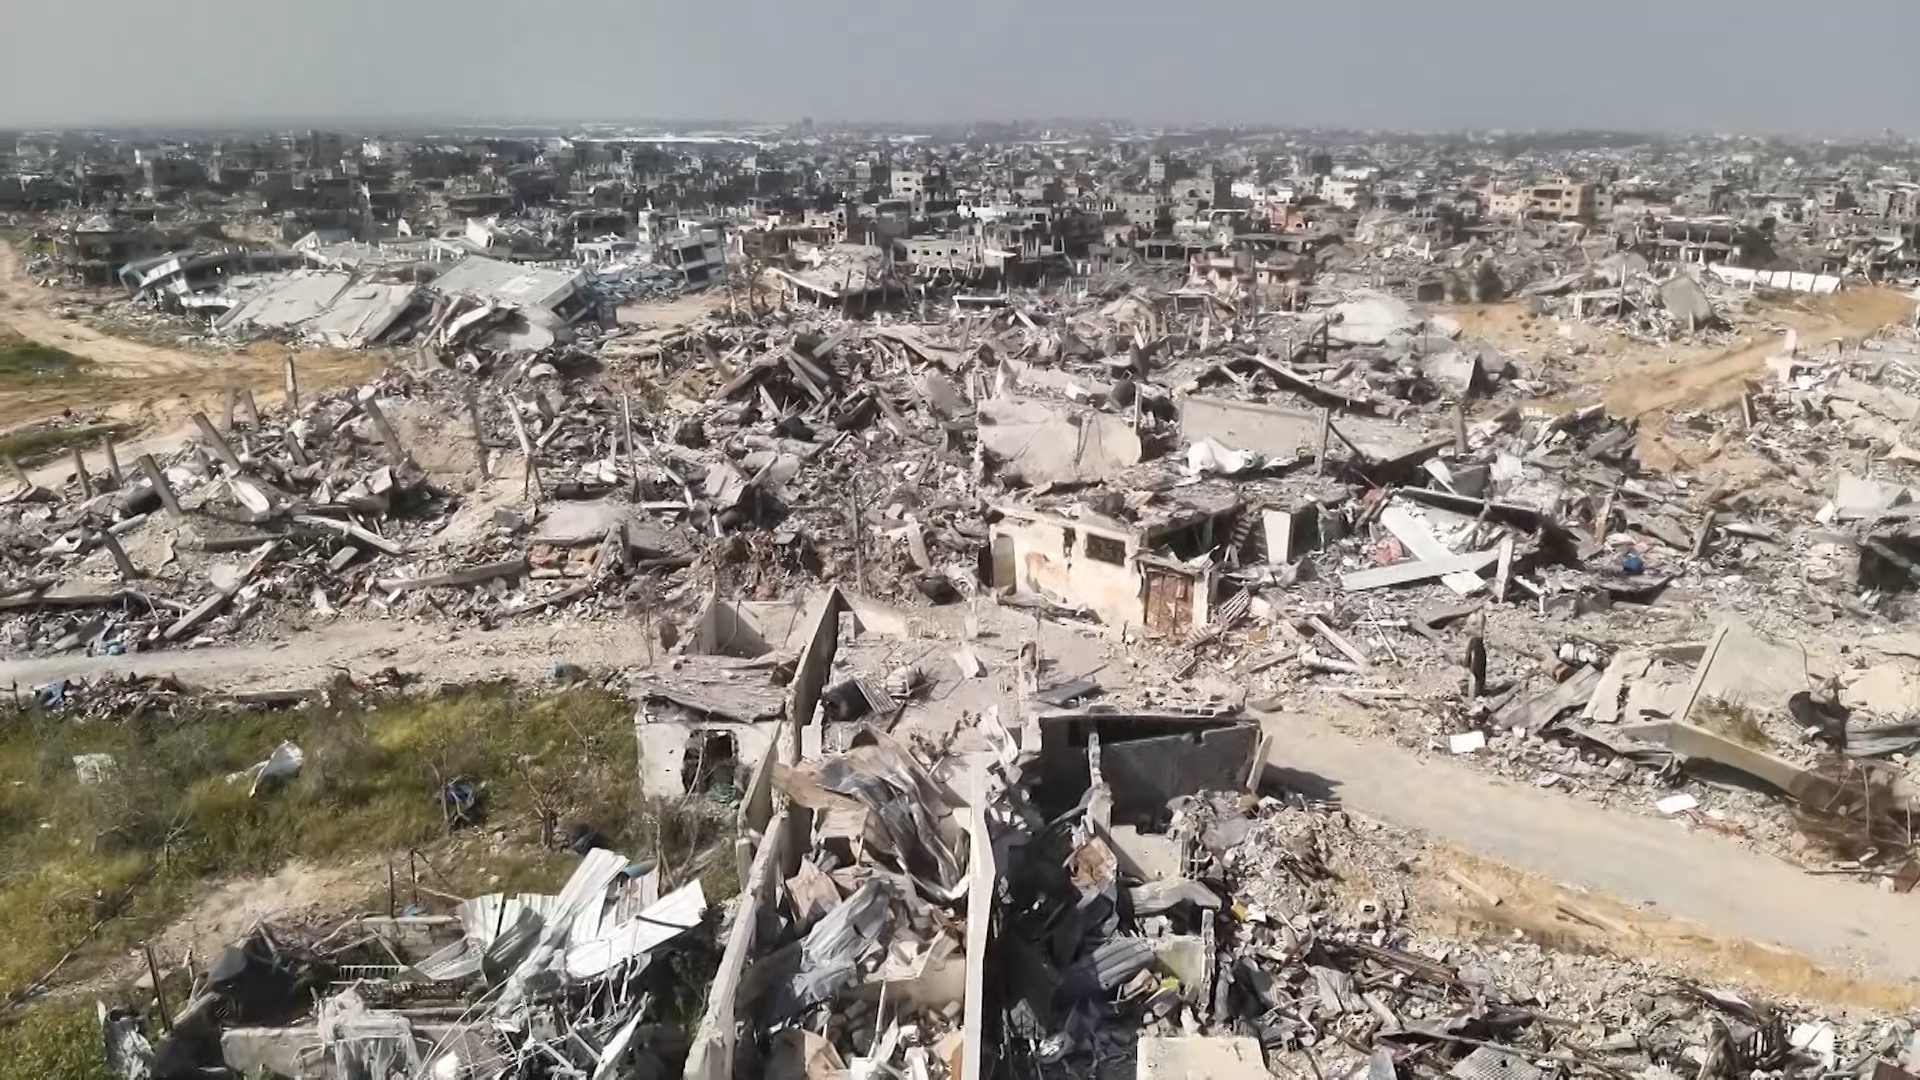 شهداء بقصف نازحين وسط غزة ودمار واسع في بيت حانون بعد انسحاب الاحتلال | أخبار – البوكس نيوز